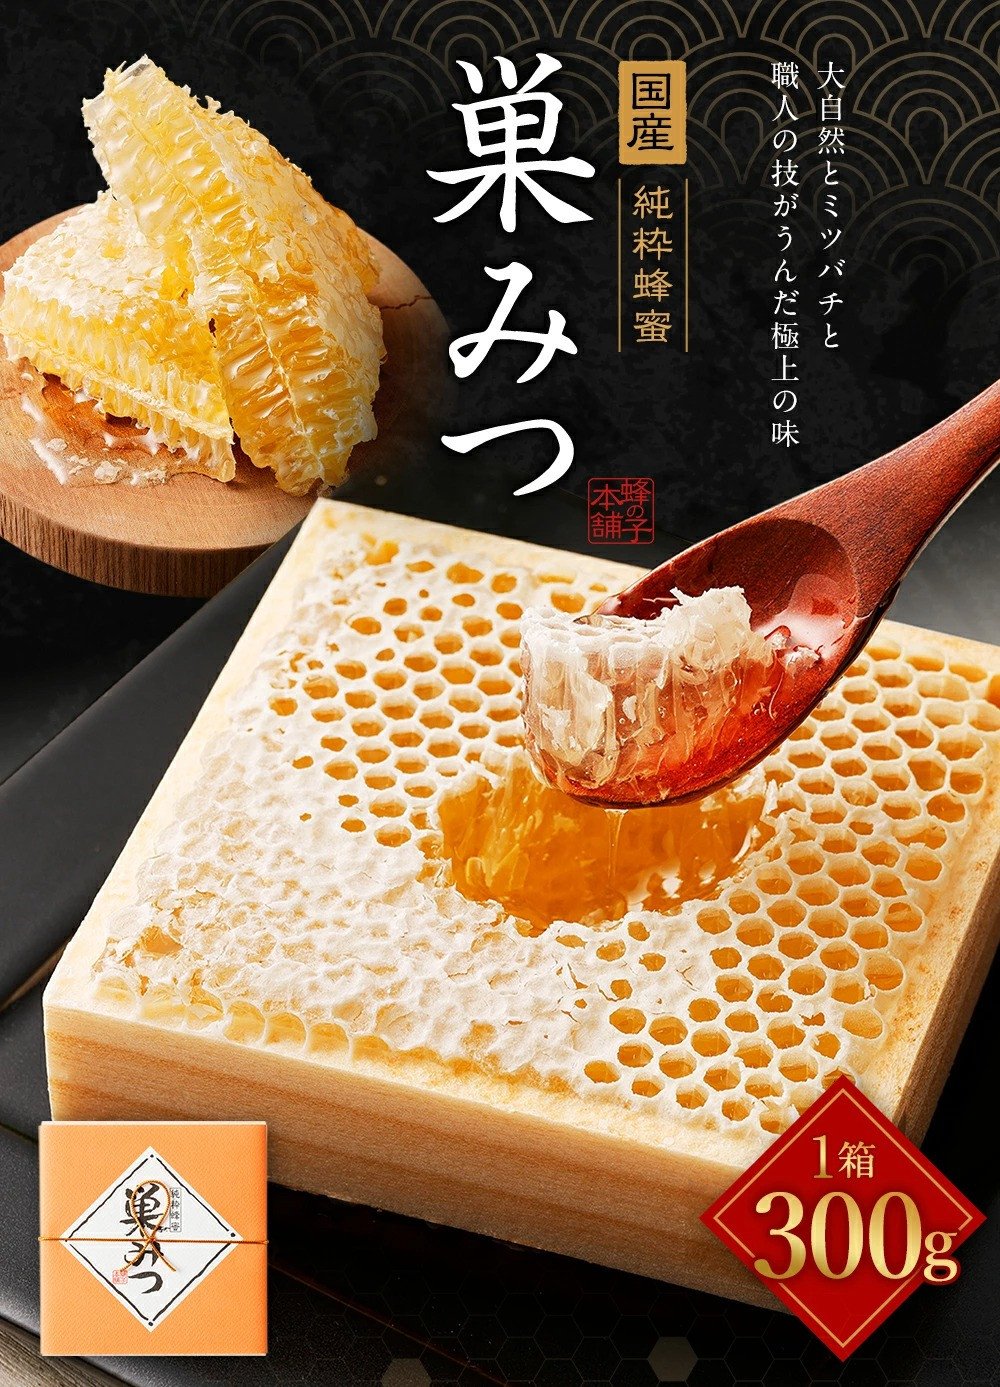 返品不可 ニホンミツバチ 日本蜜蜂 巣蜜 コムハニー 849g - 食品